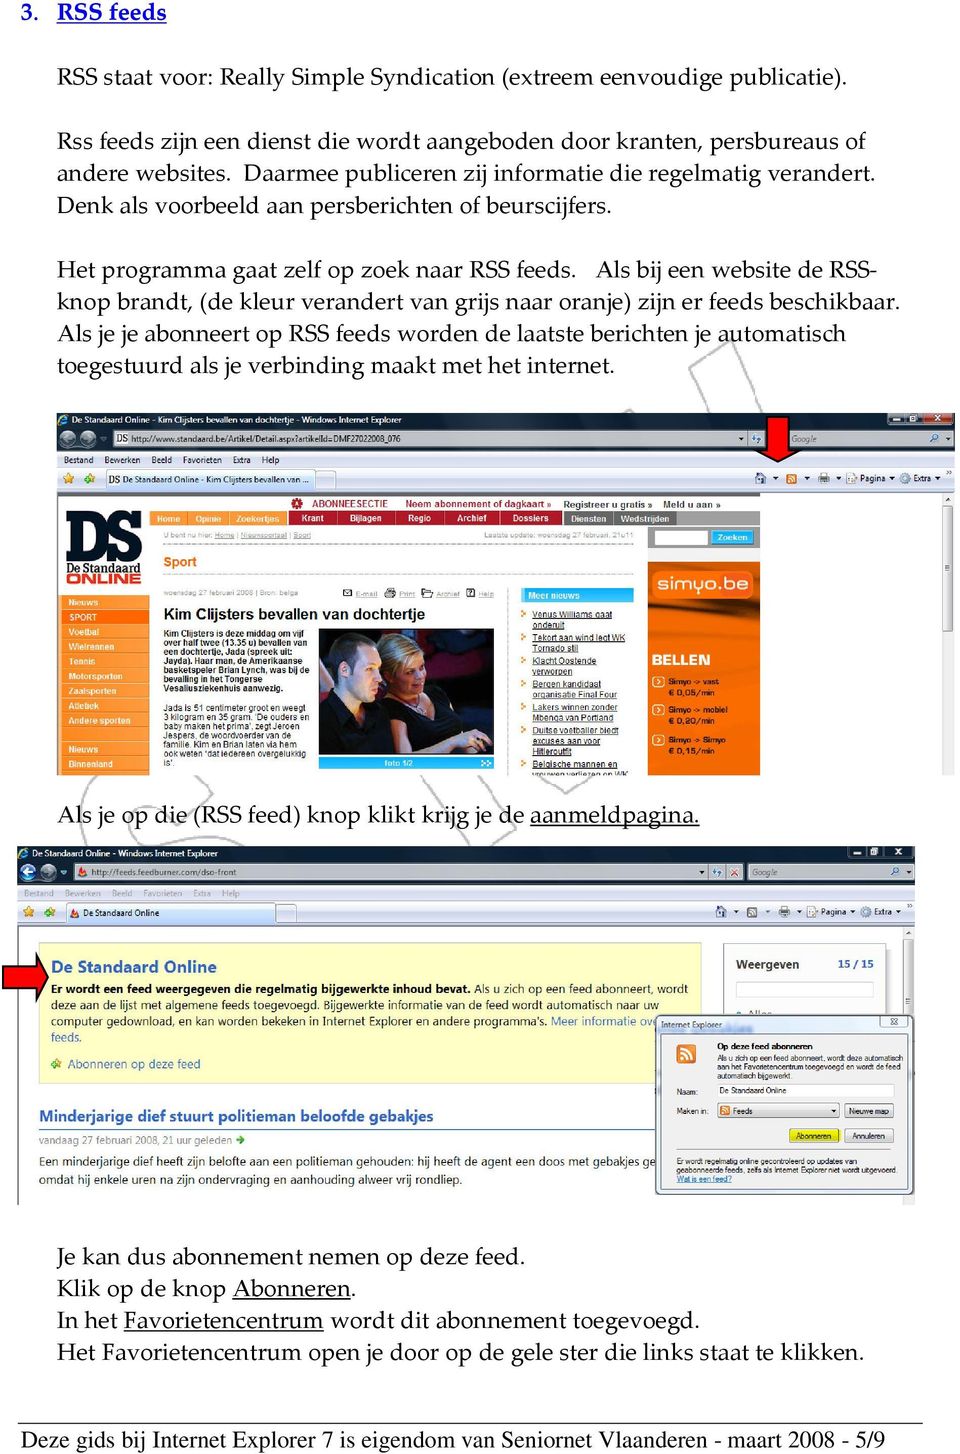 Als bij een website de RSSknop brandt, (de kleur verandert van grijs naar oranje) zijn er feeds beschikbaar.